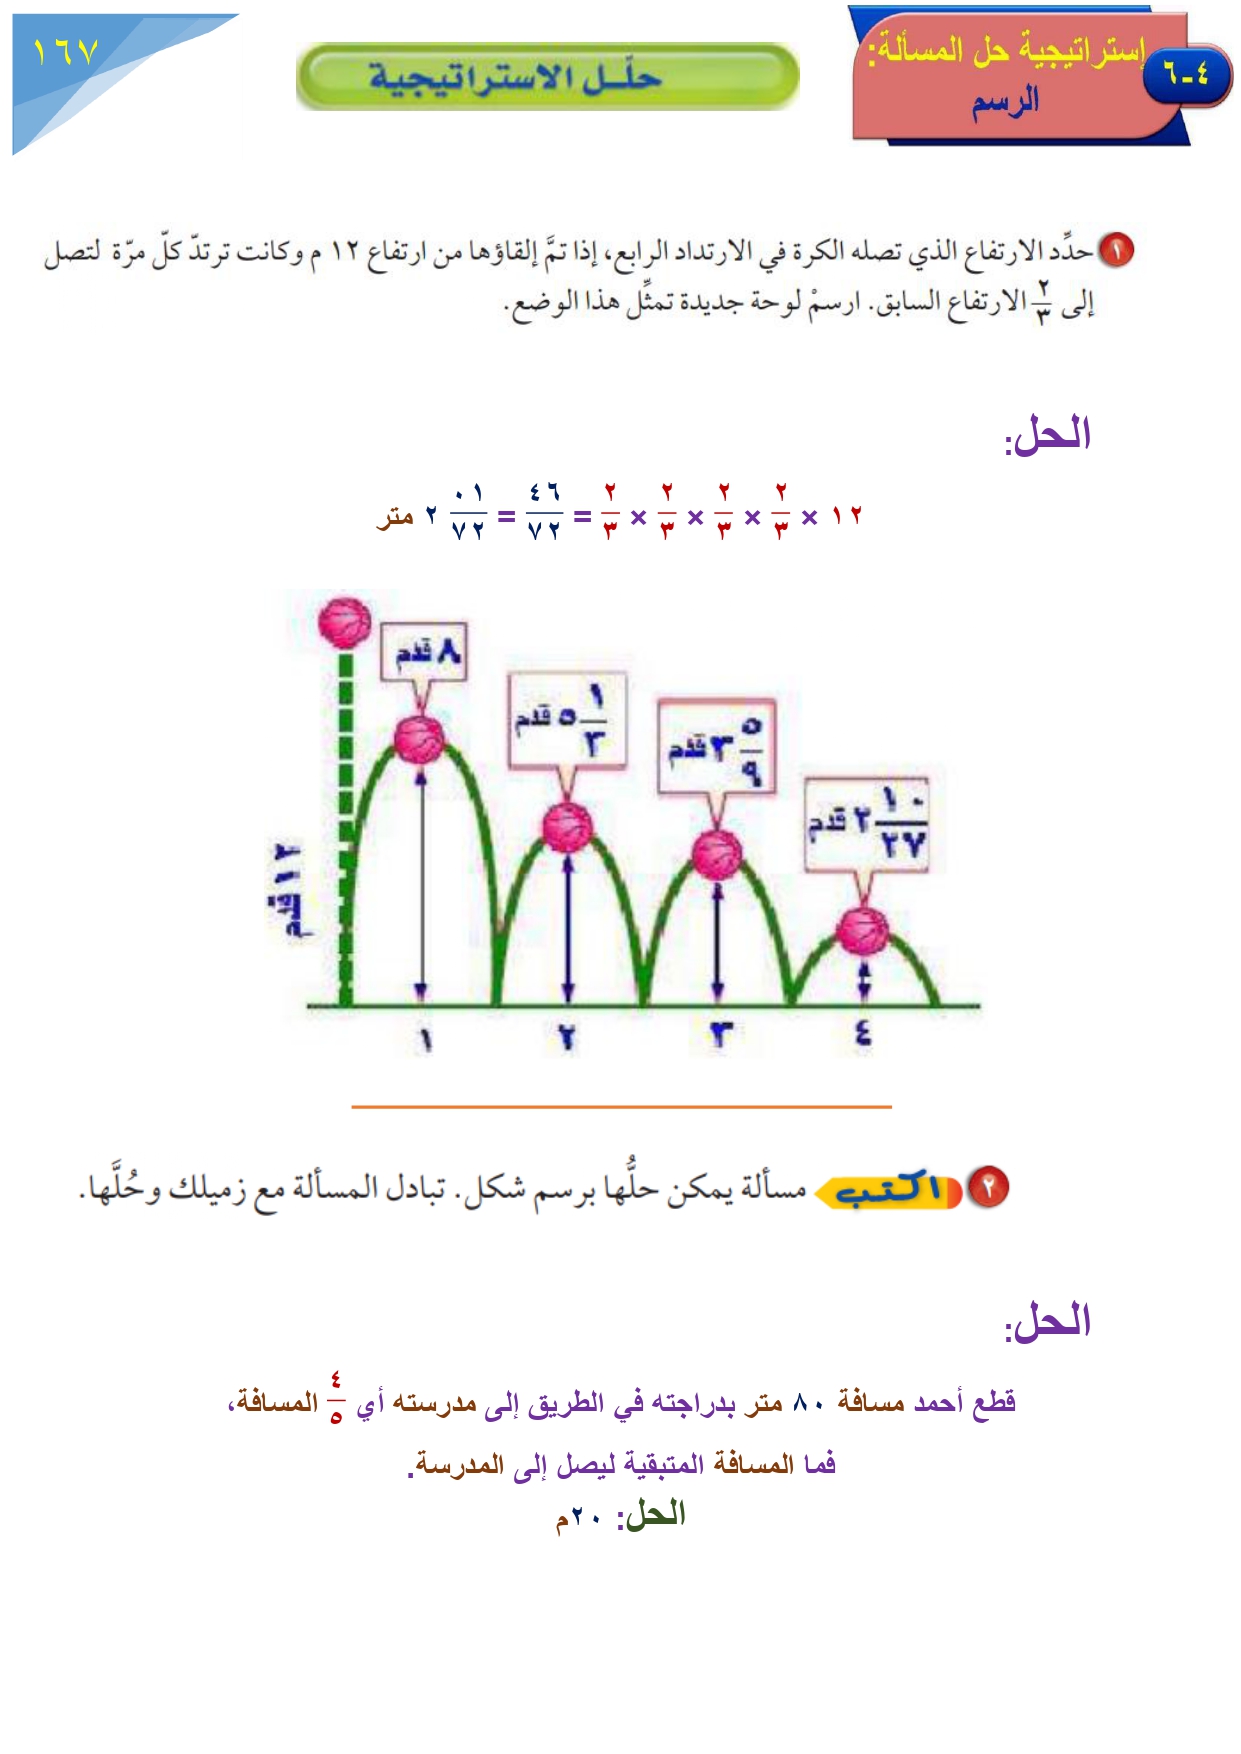 حل رياضيات أول متوسط - الفصل 4 - النسبة والتناسب - صفحة 139-132